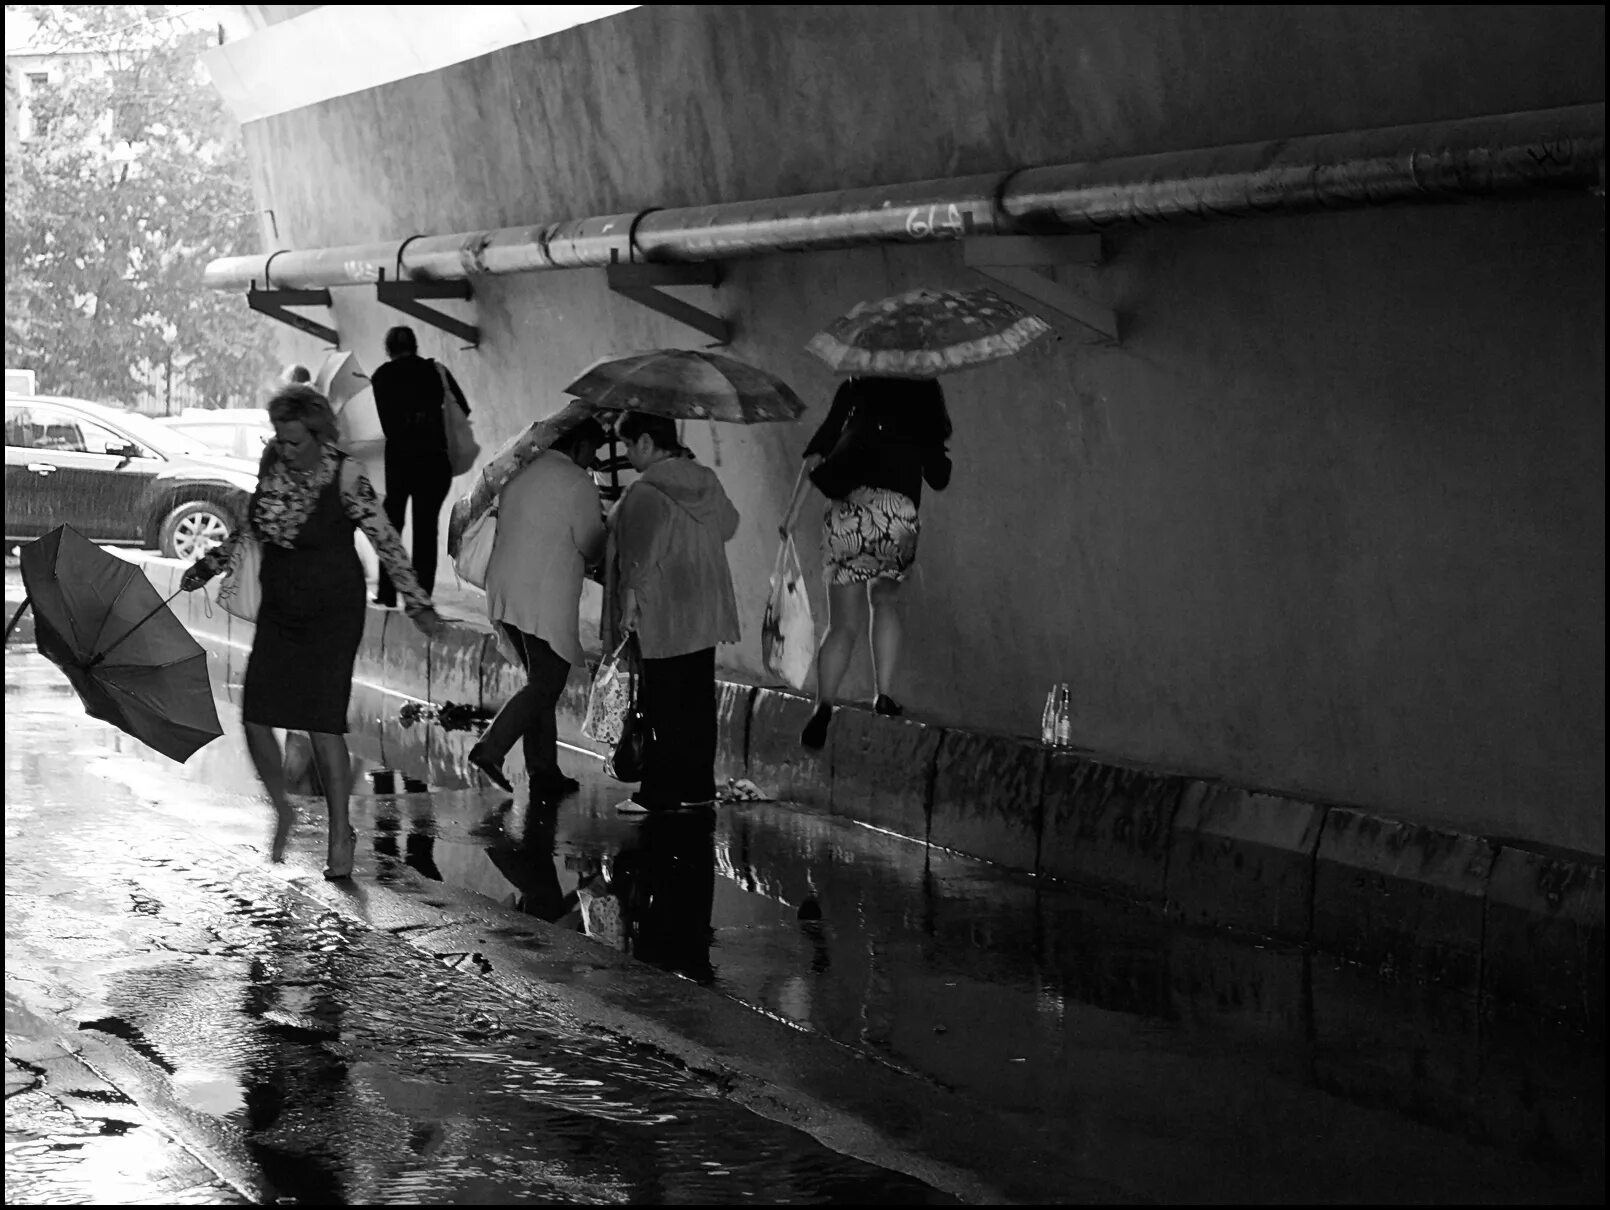 Дождь в дорогу примета. Дождь в Москве. Студия с дождем Москва. Эксклюзивные фото люди город монохром. Москва дождь ретро.